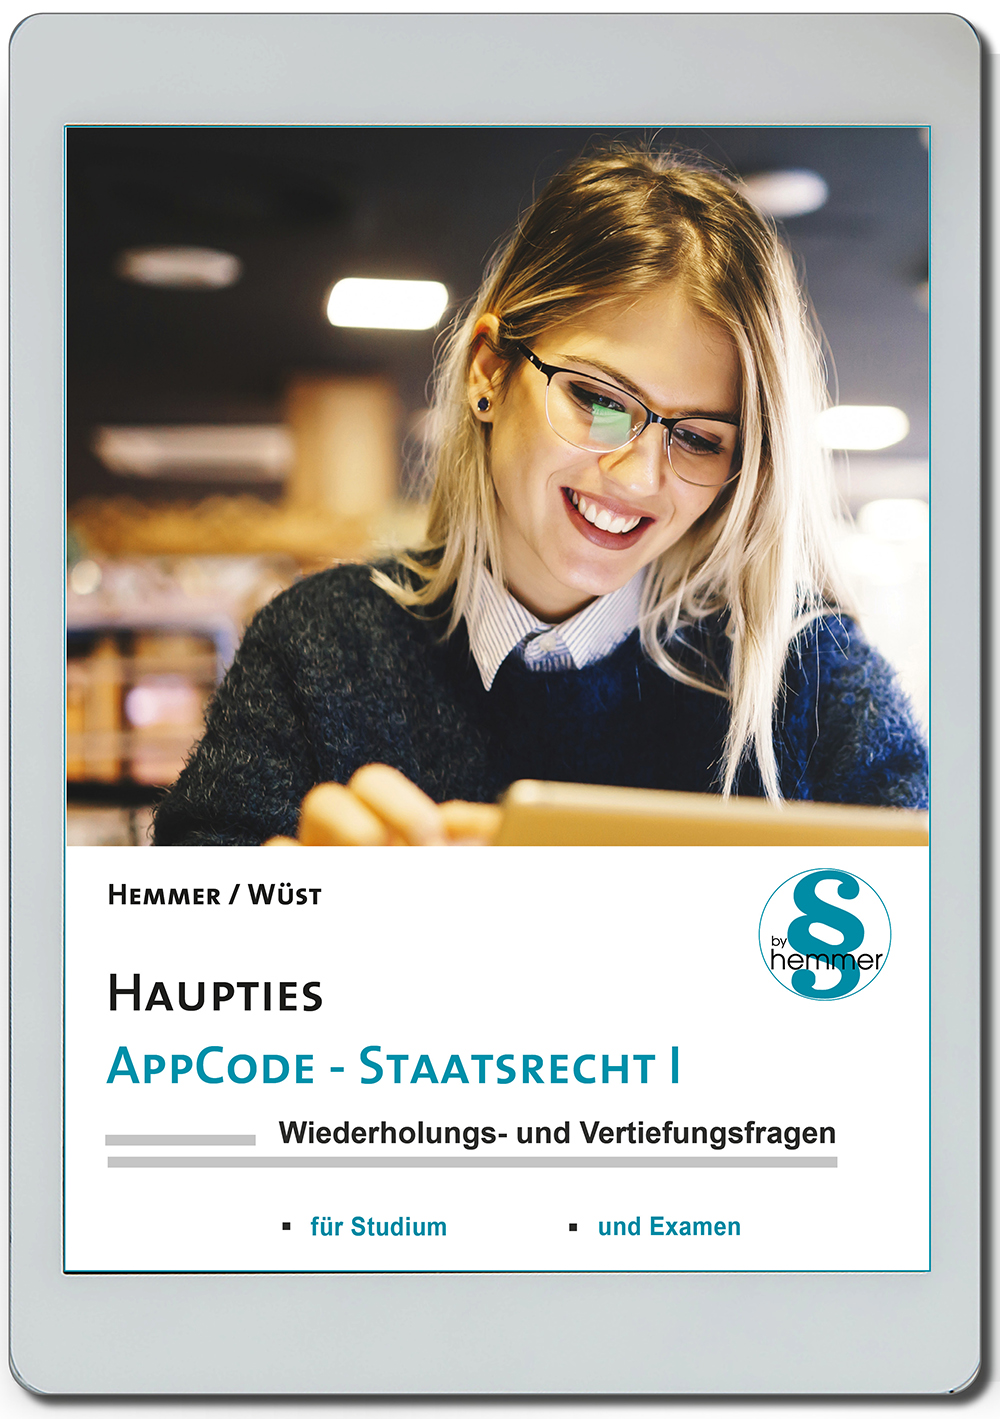 AppCode - haupties - Staatsrecht I